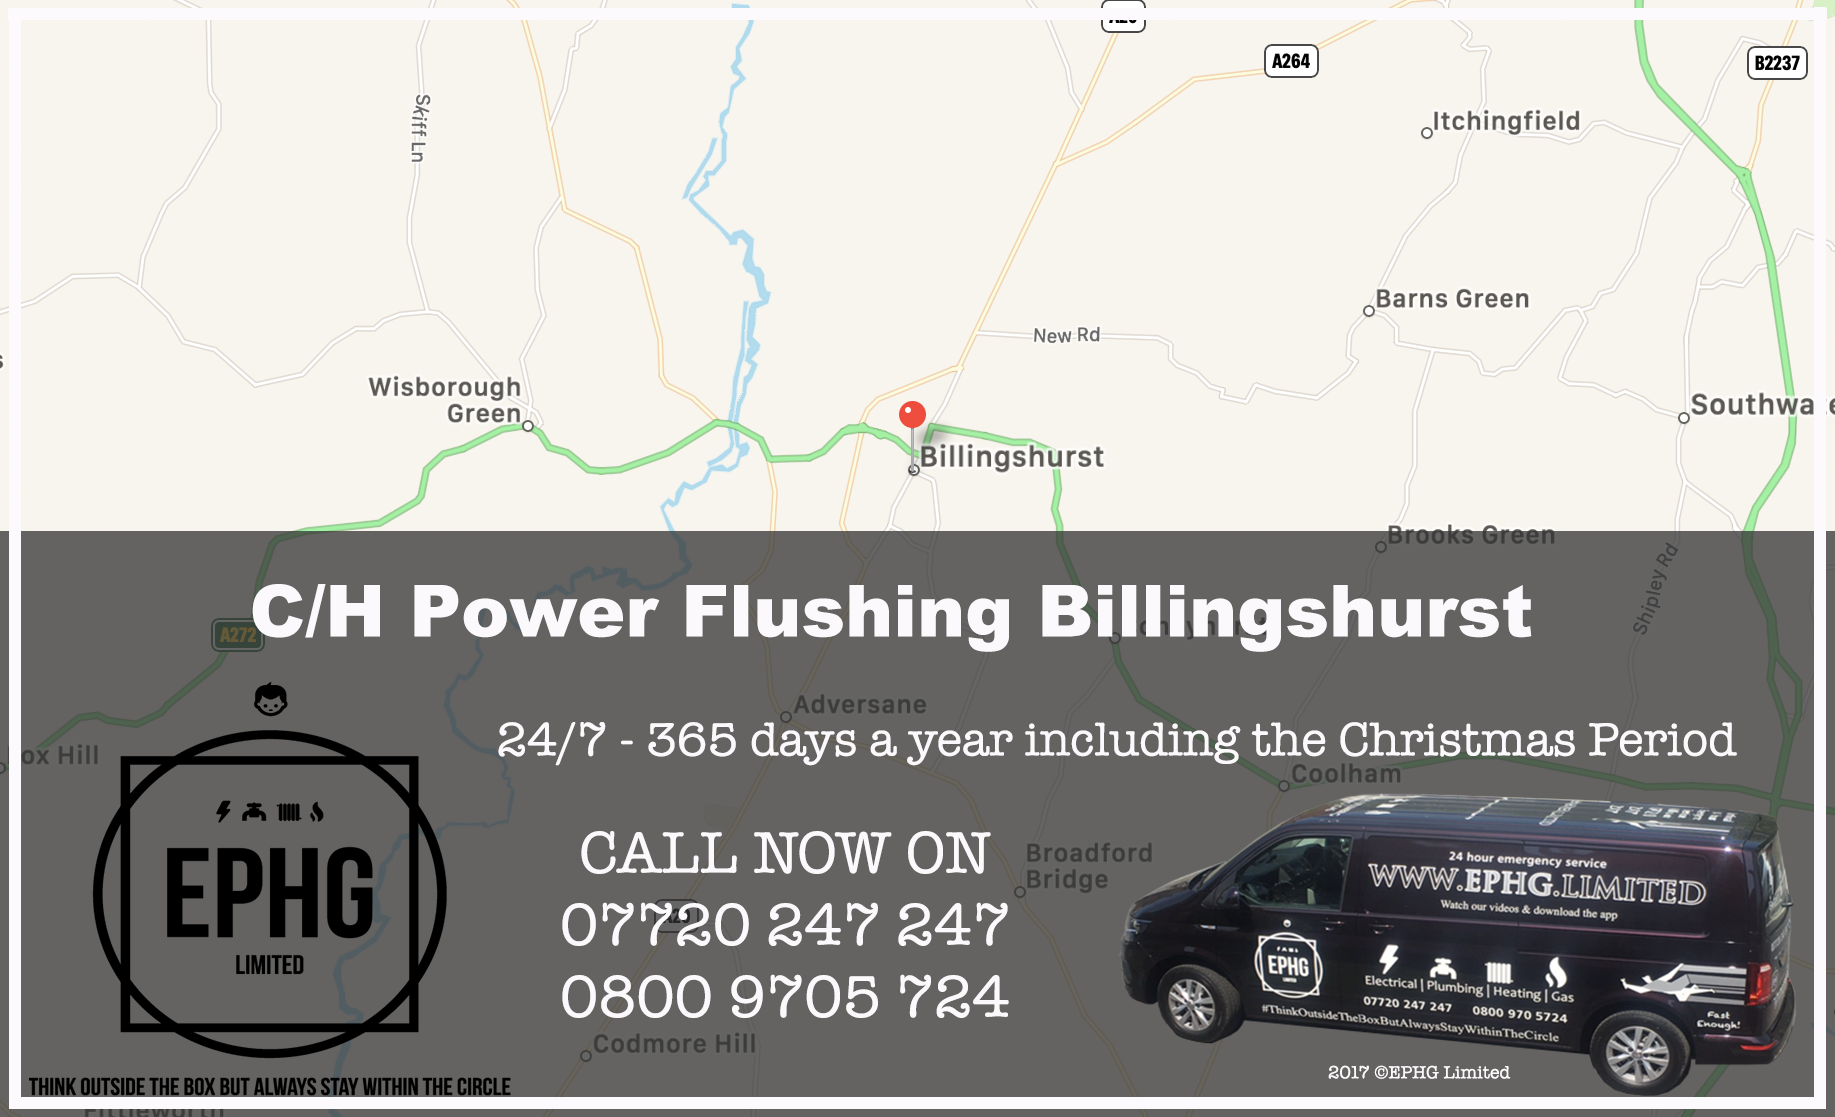 Central Heating Power Flush Billingshurst